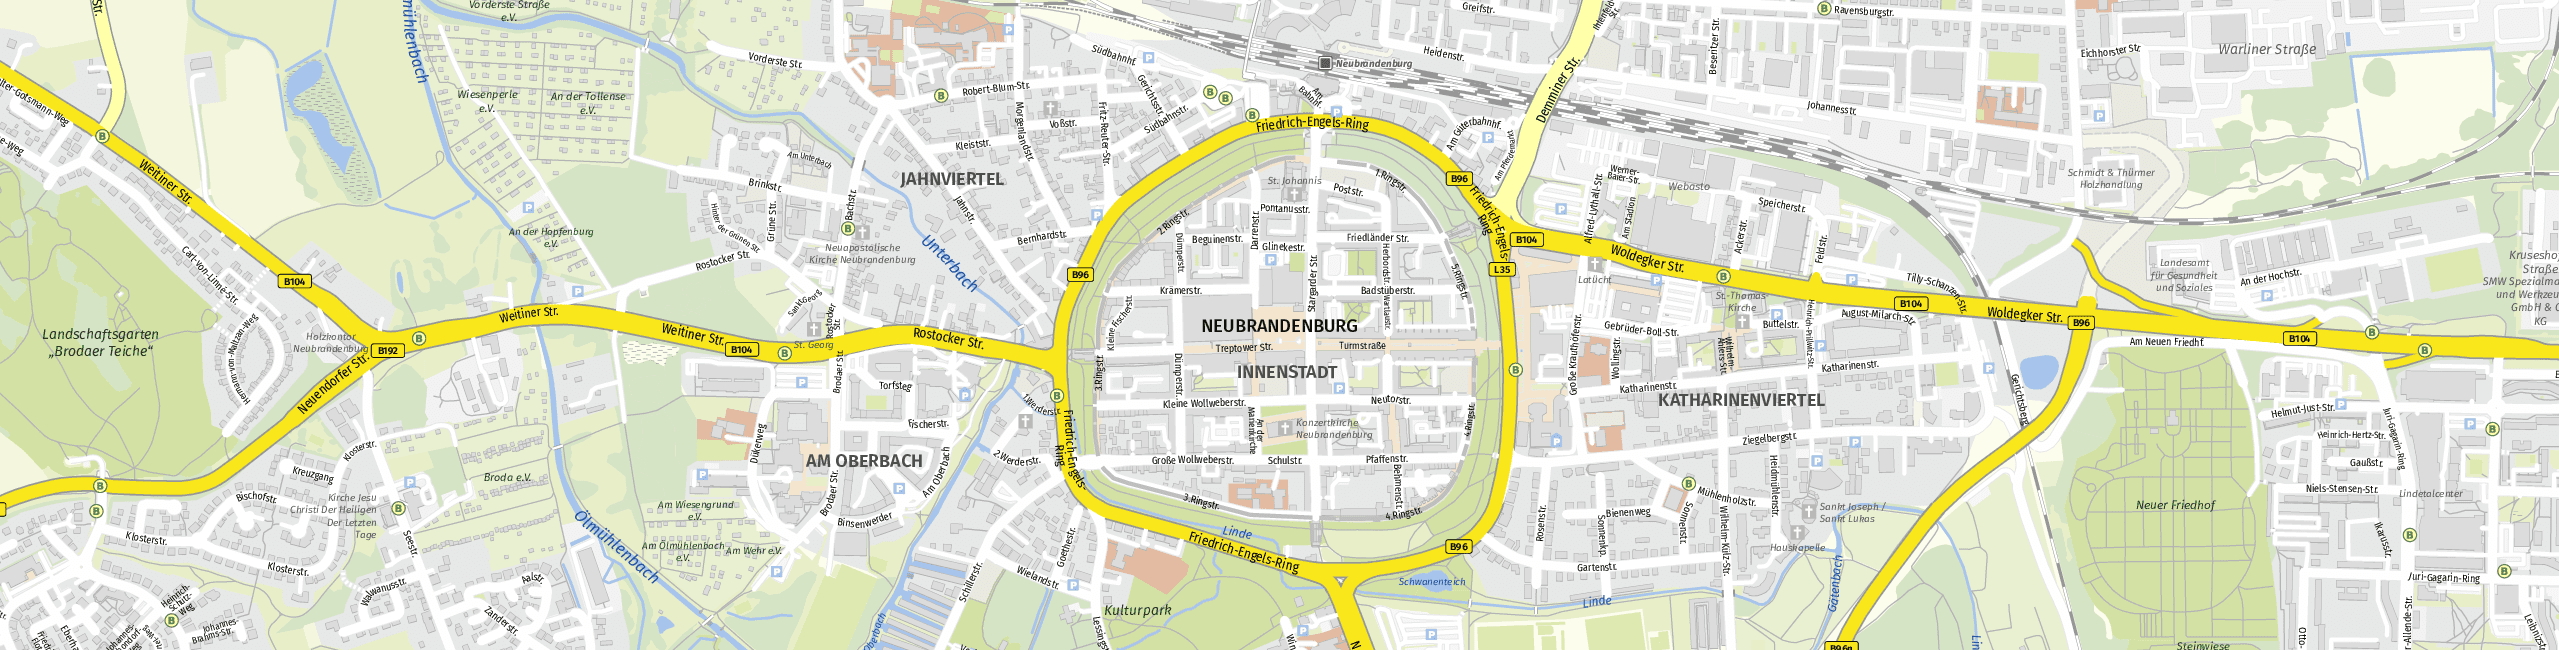 Stadtplan Neubrandenburg zum Downloaden.